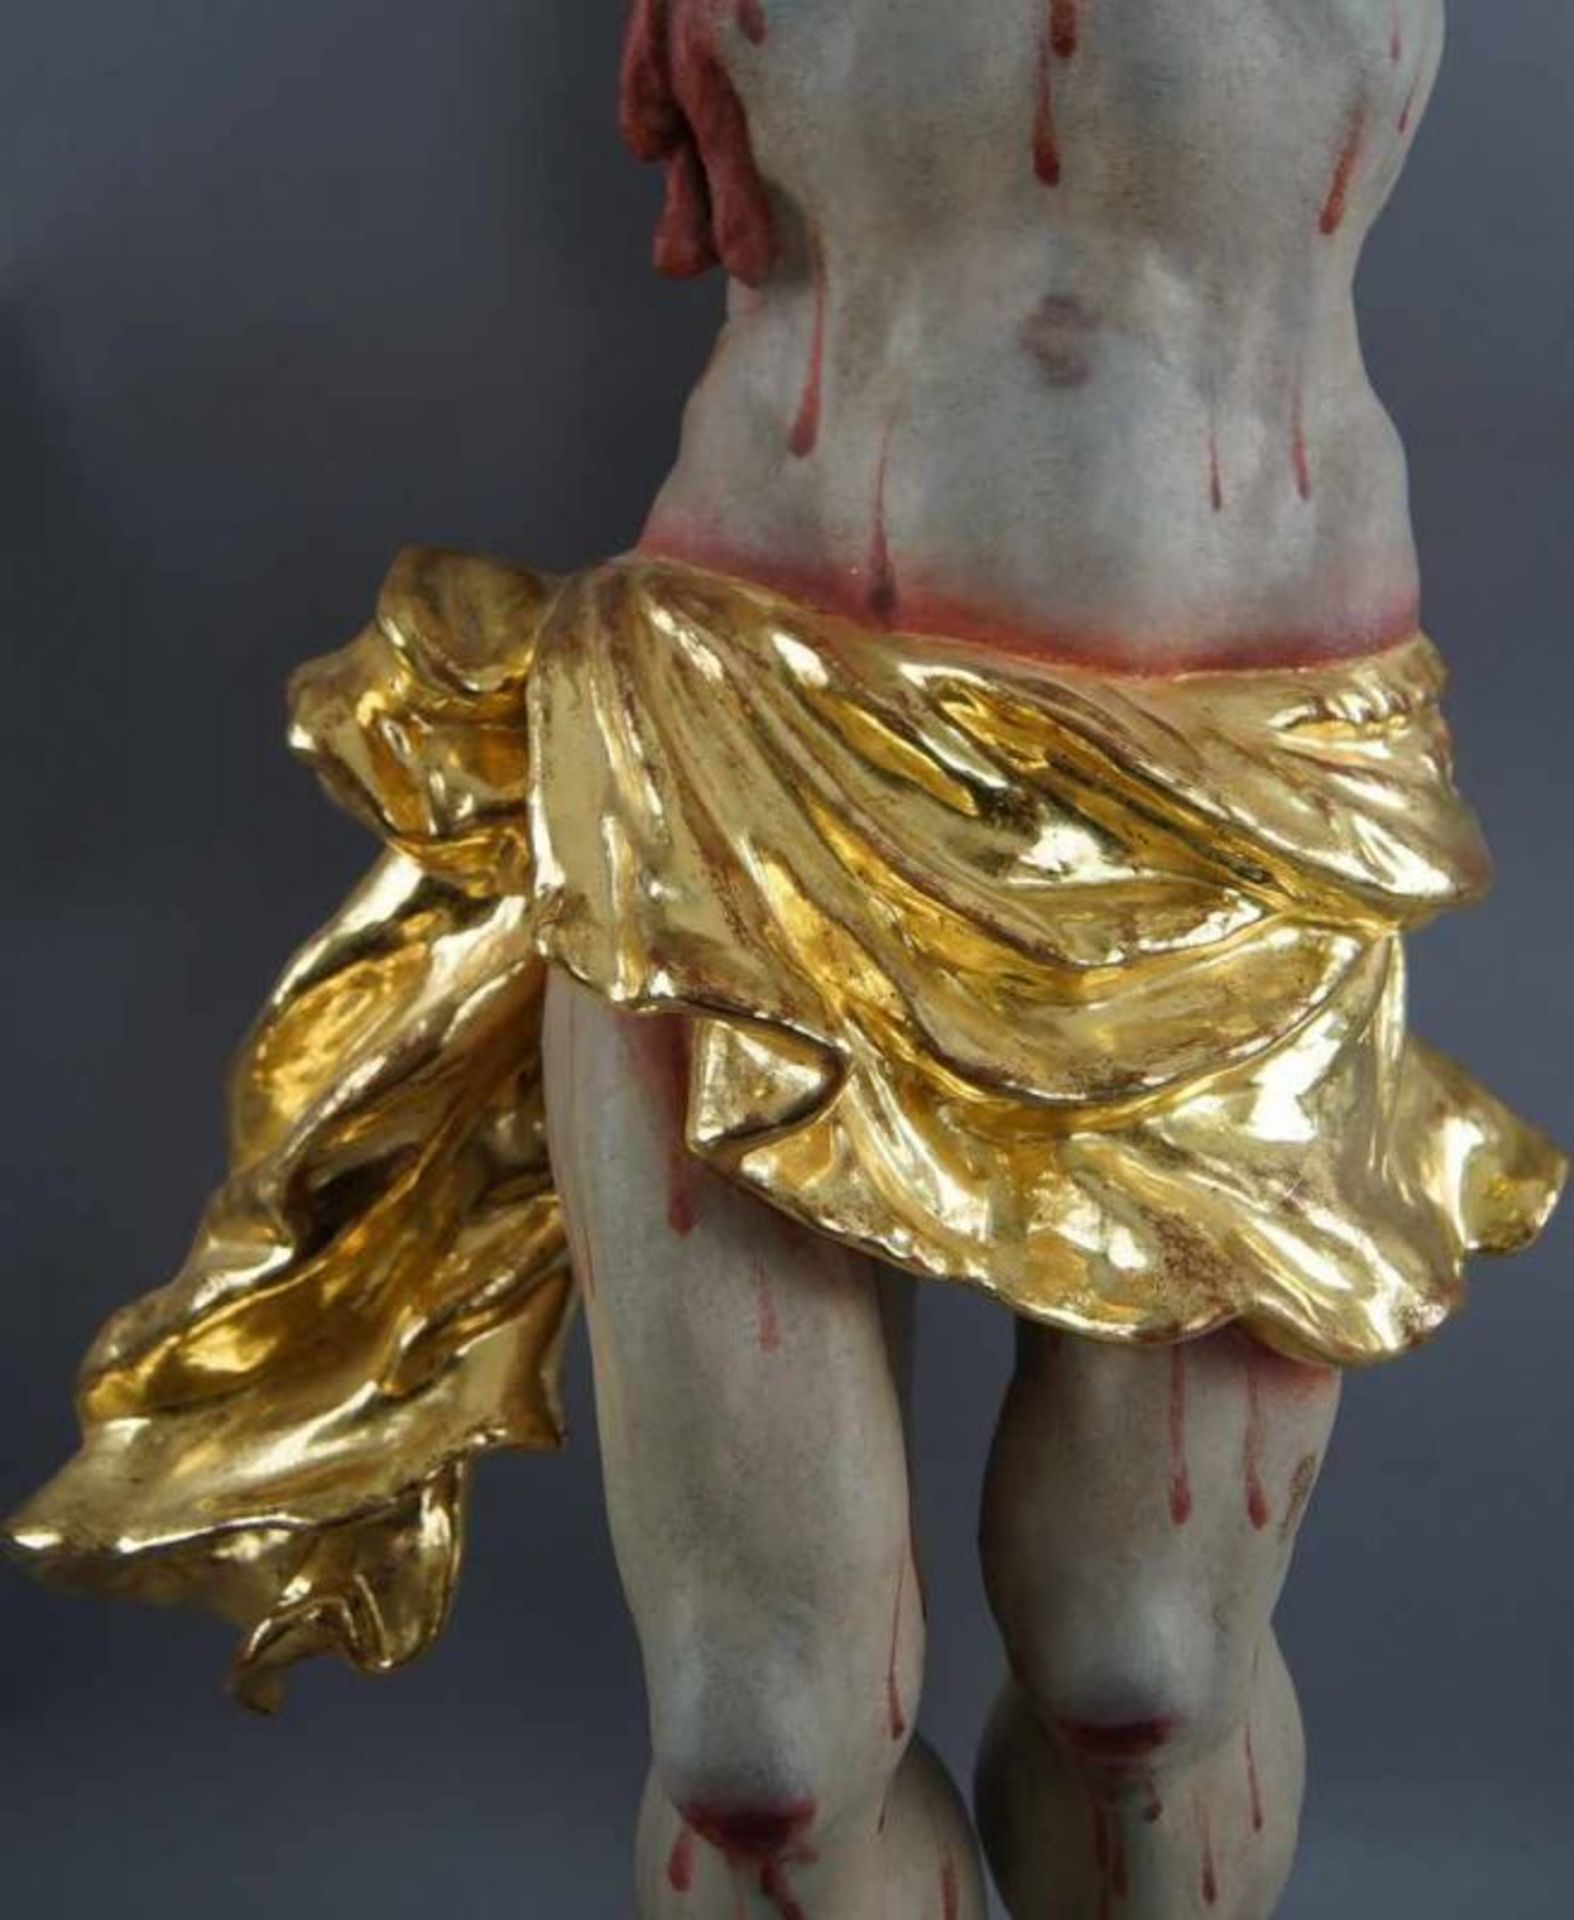 Barocker Korpus Christi, Holz geschnitzt und gefasst, 18. JH, rest., 92x79cm 20.17 % buyer's premium - Bild 4 aus 11